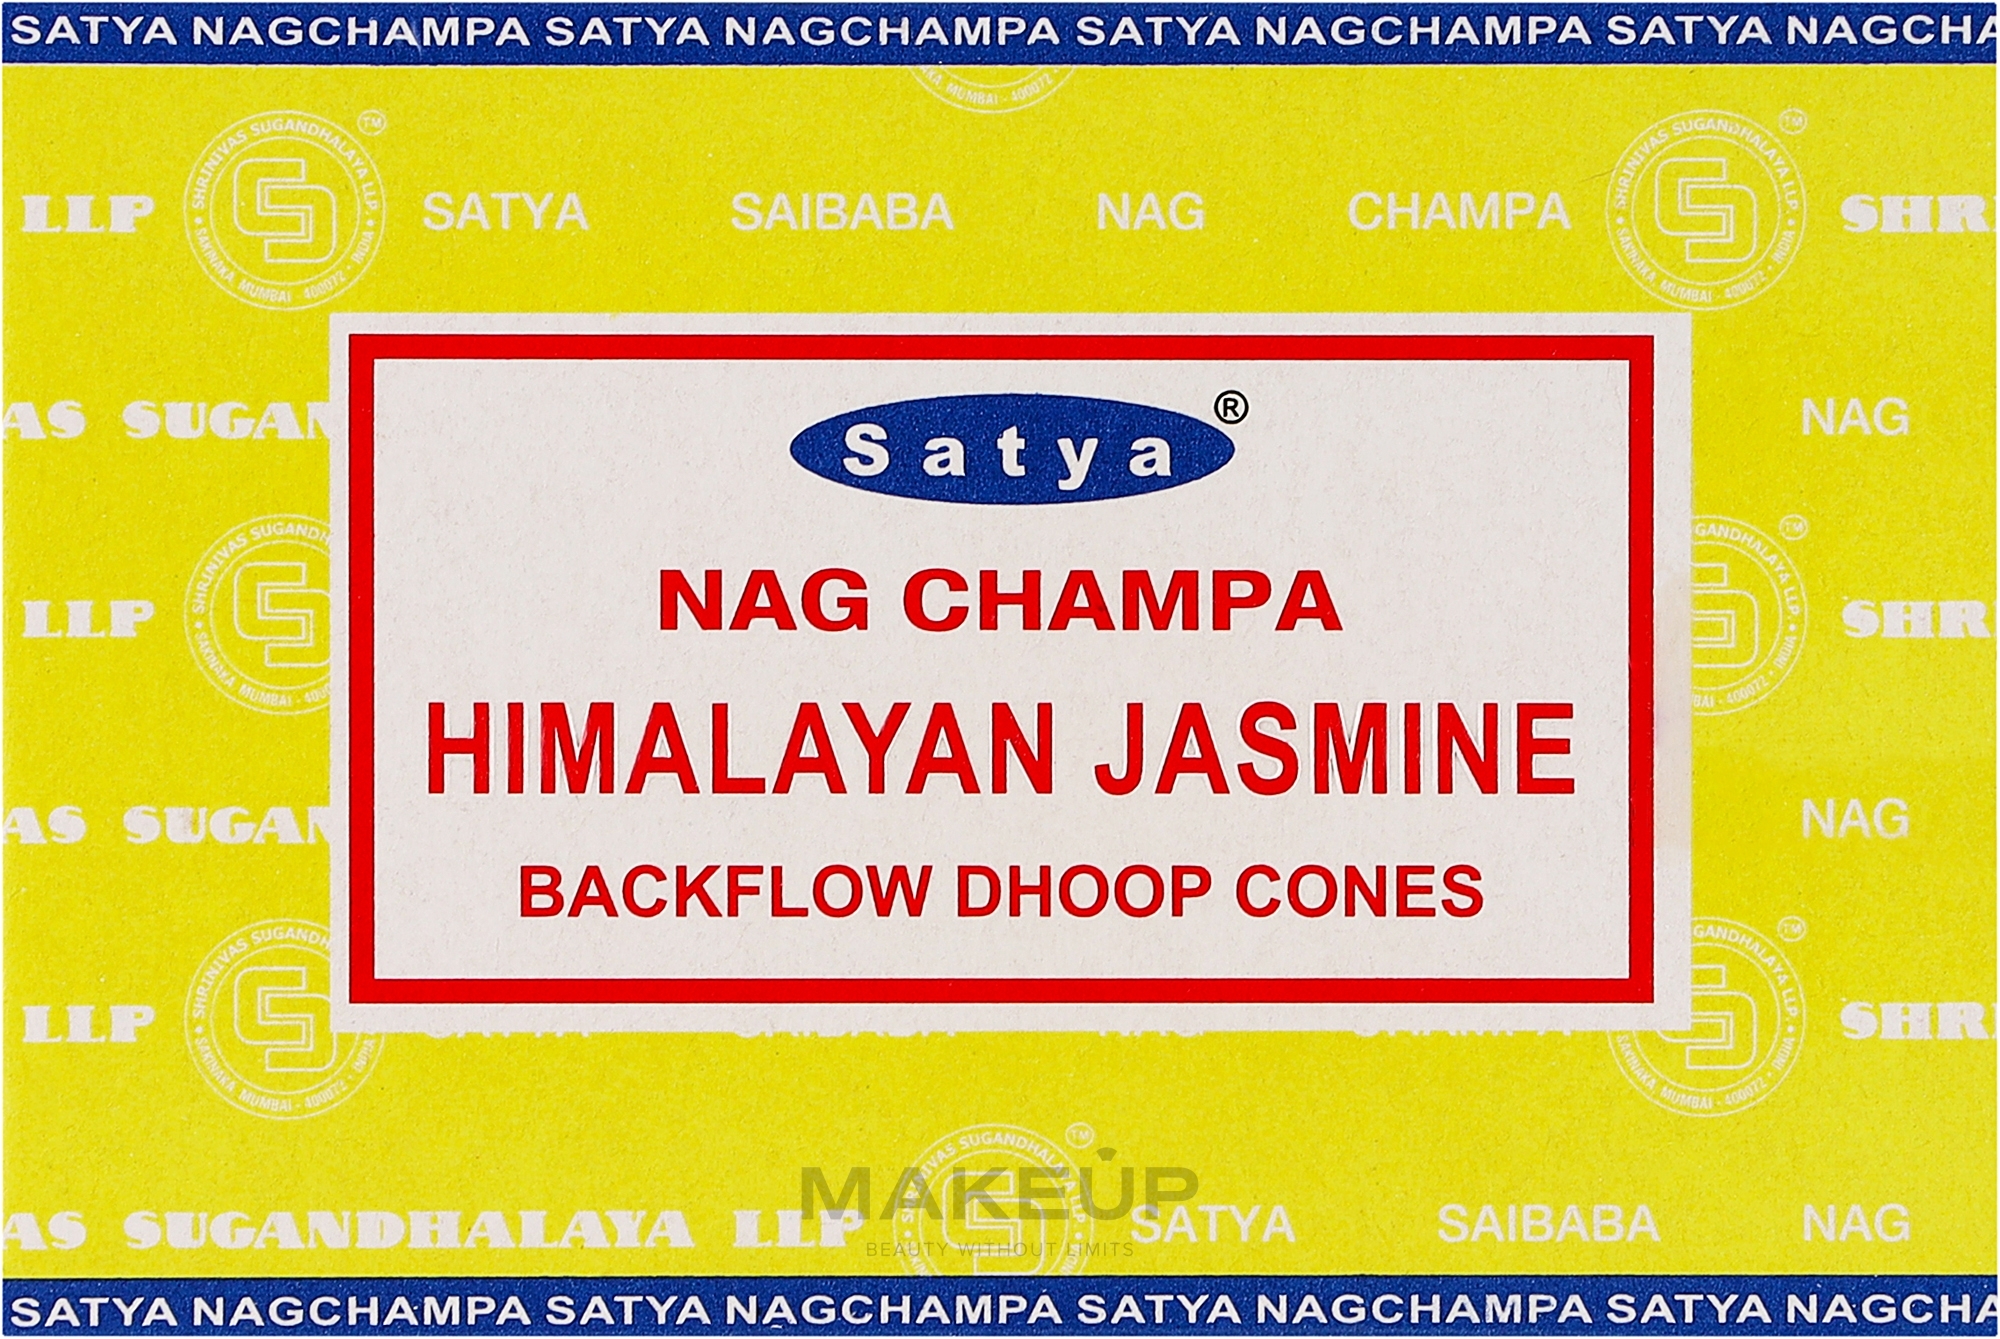 Сланкі димні пахощі конуси "Гімалайський жасмин" - Satya Himalayan Jasmine Backflow Dhoop Cones — фото 10шт